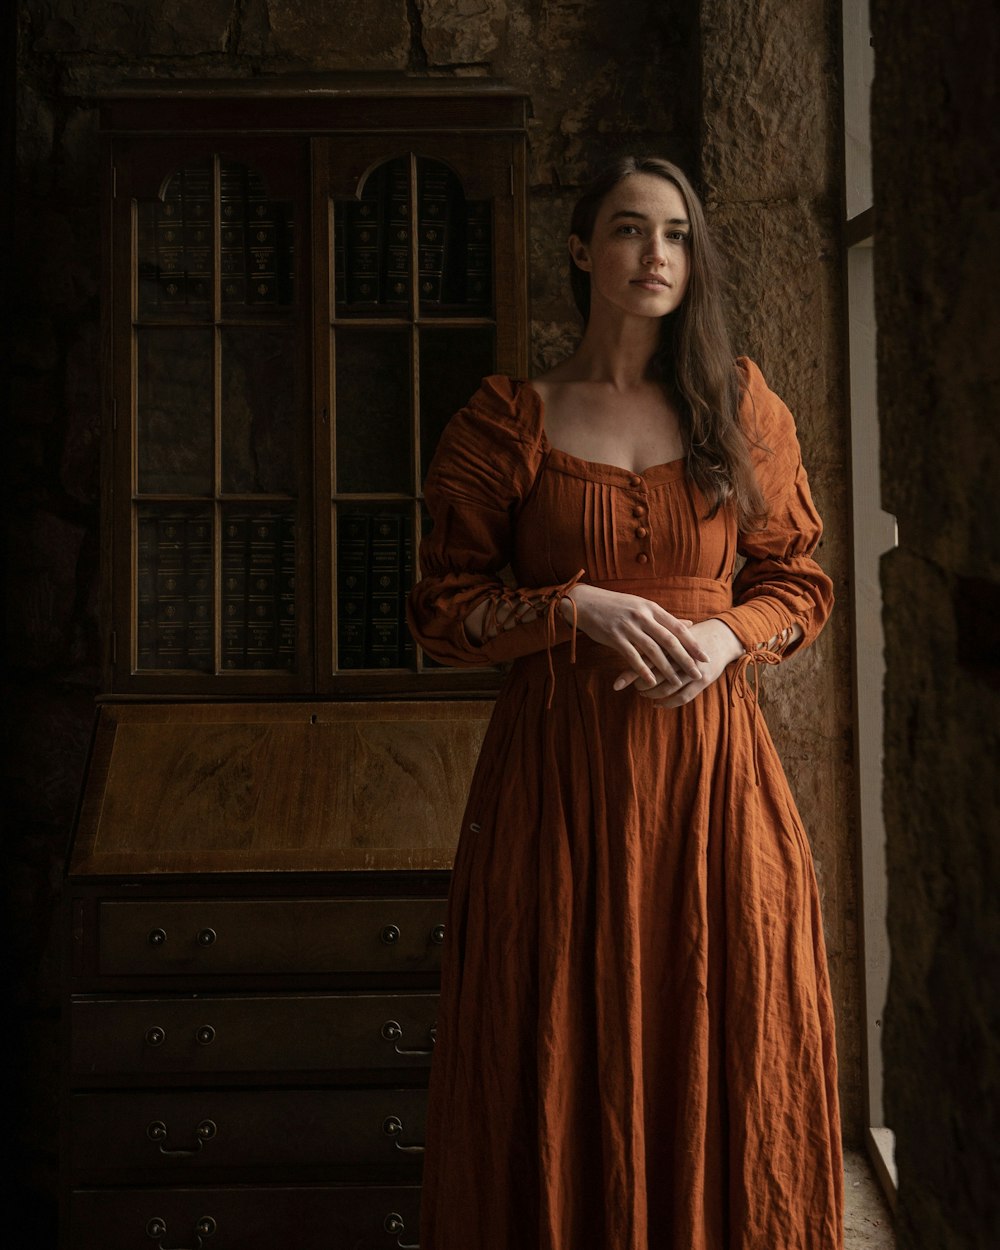 Una mujer con un vestido naranja parada frente a una cómoda